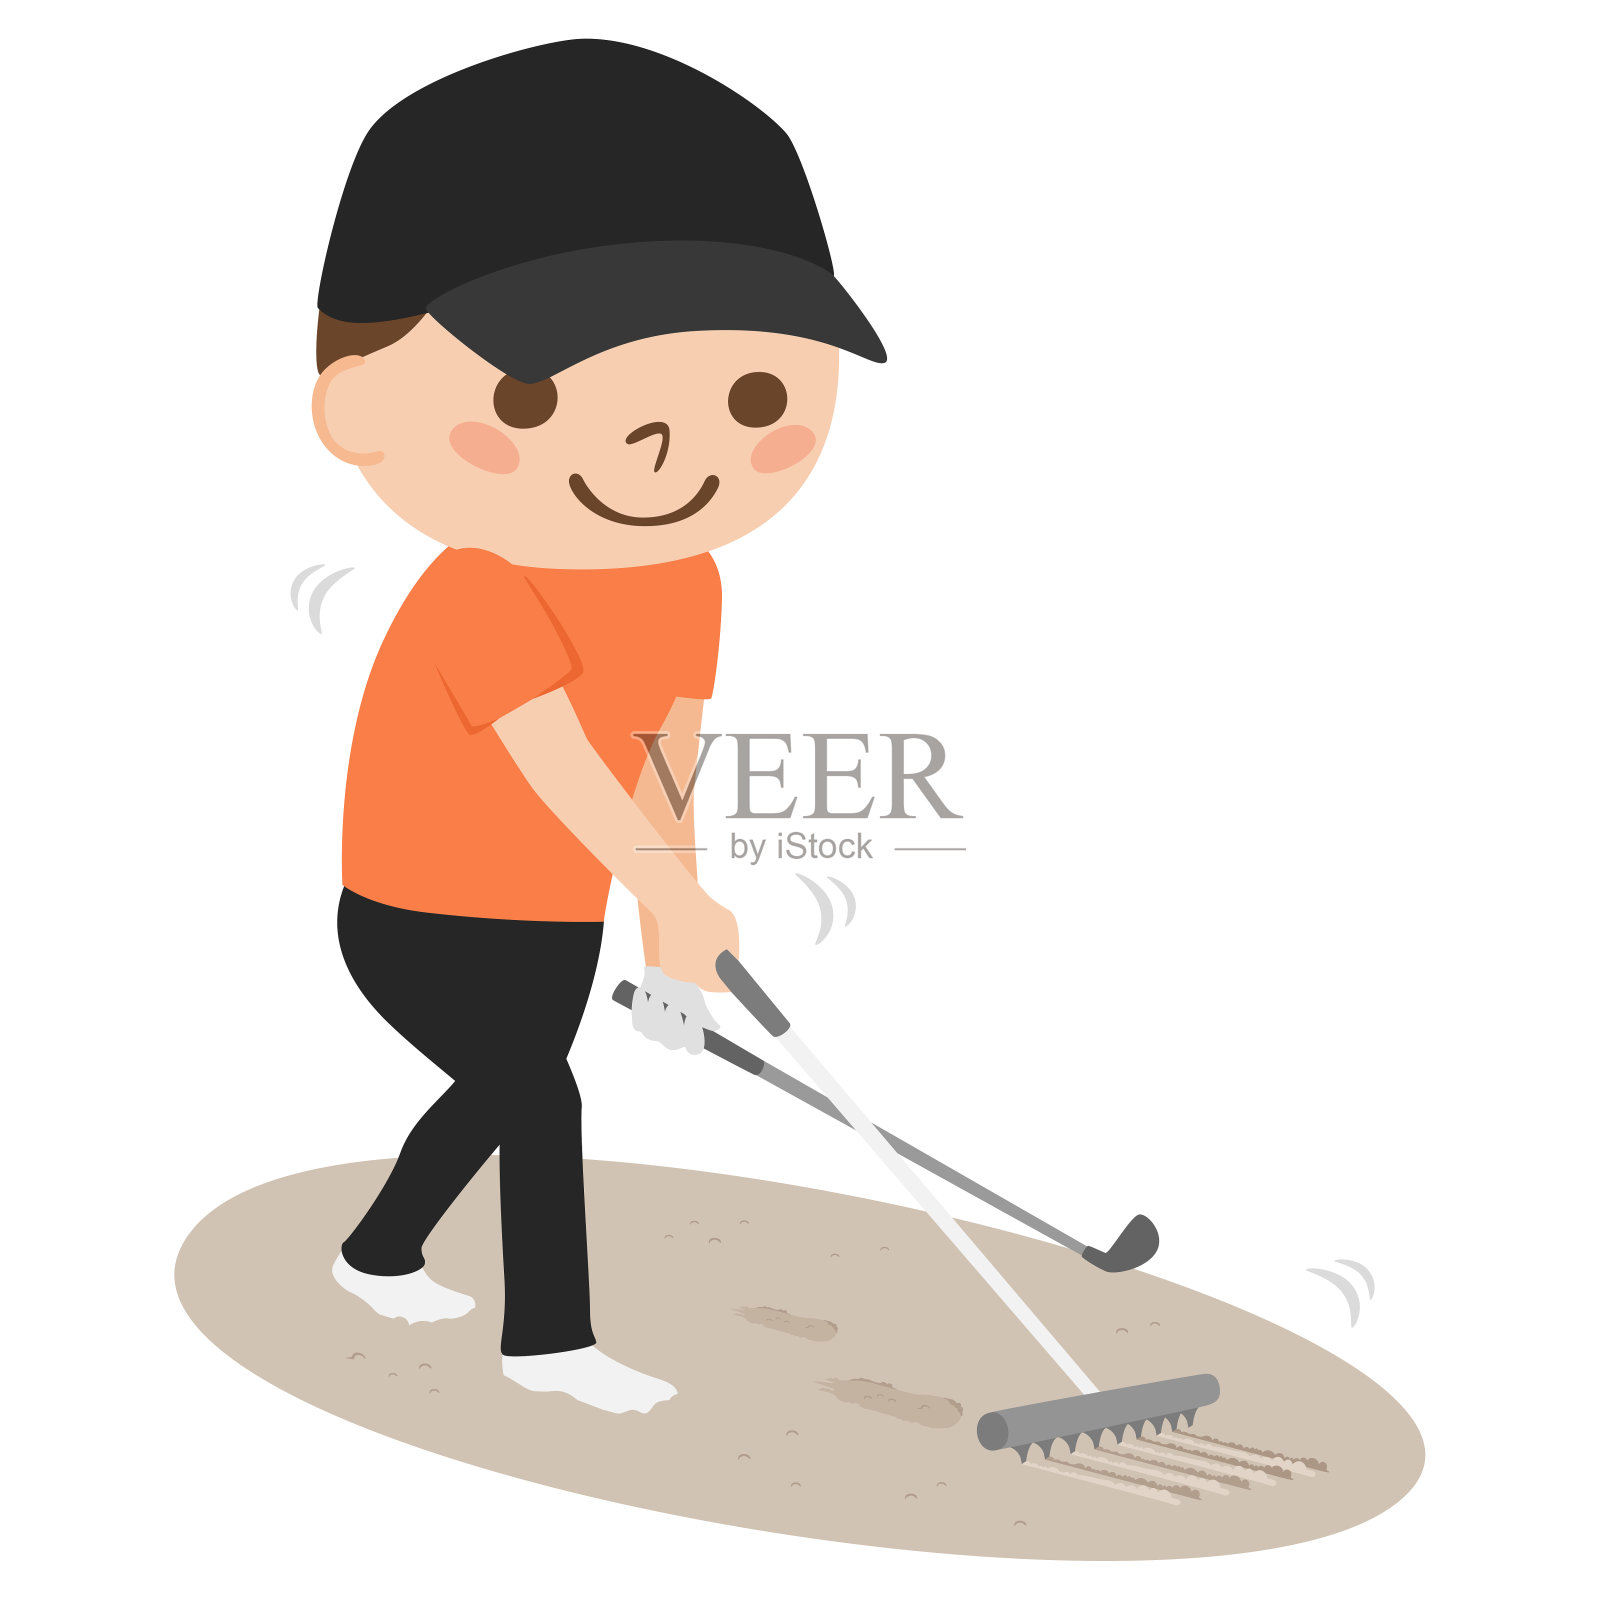 一个年轻人打高尔夫球的插图。男人们用耙子清扫地堡。插画图片素材